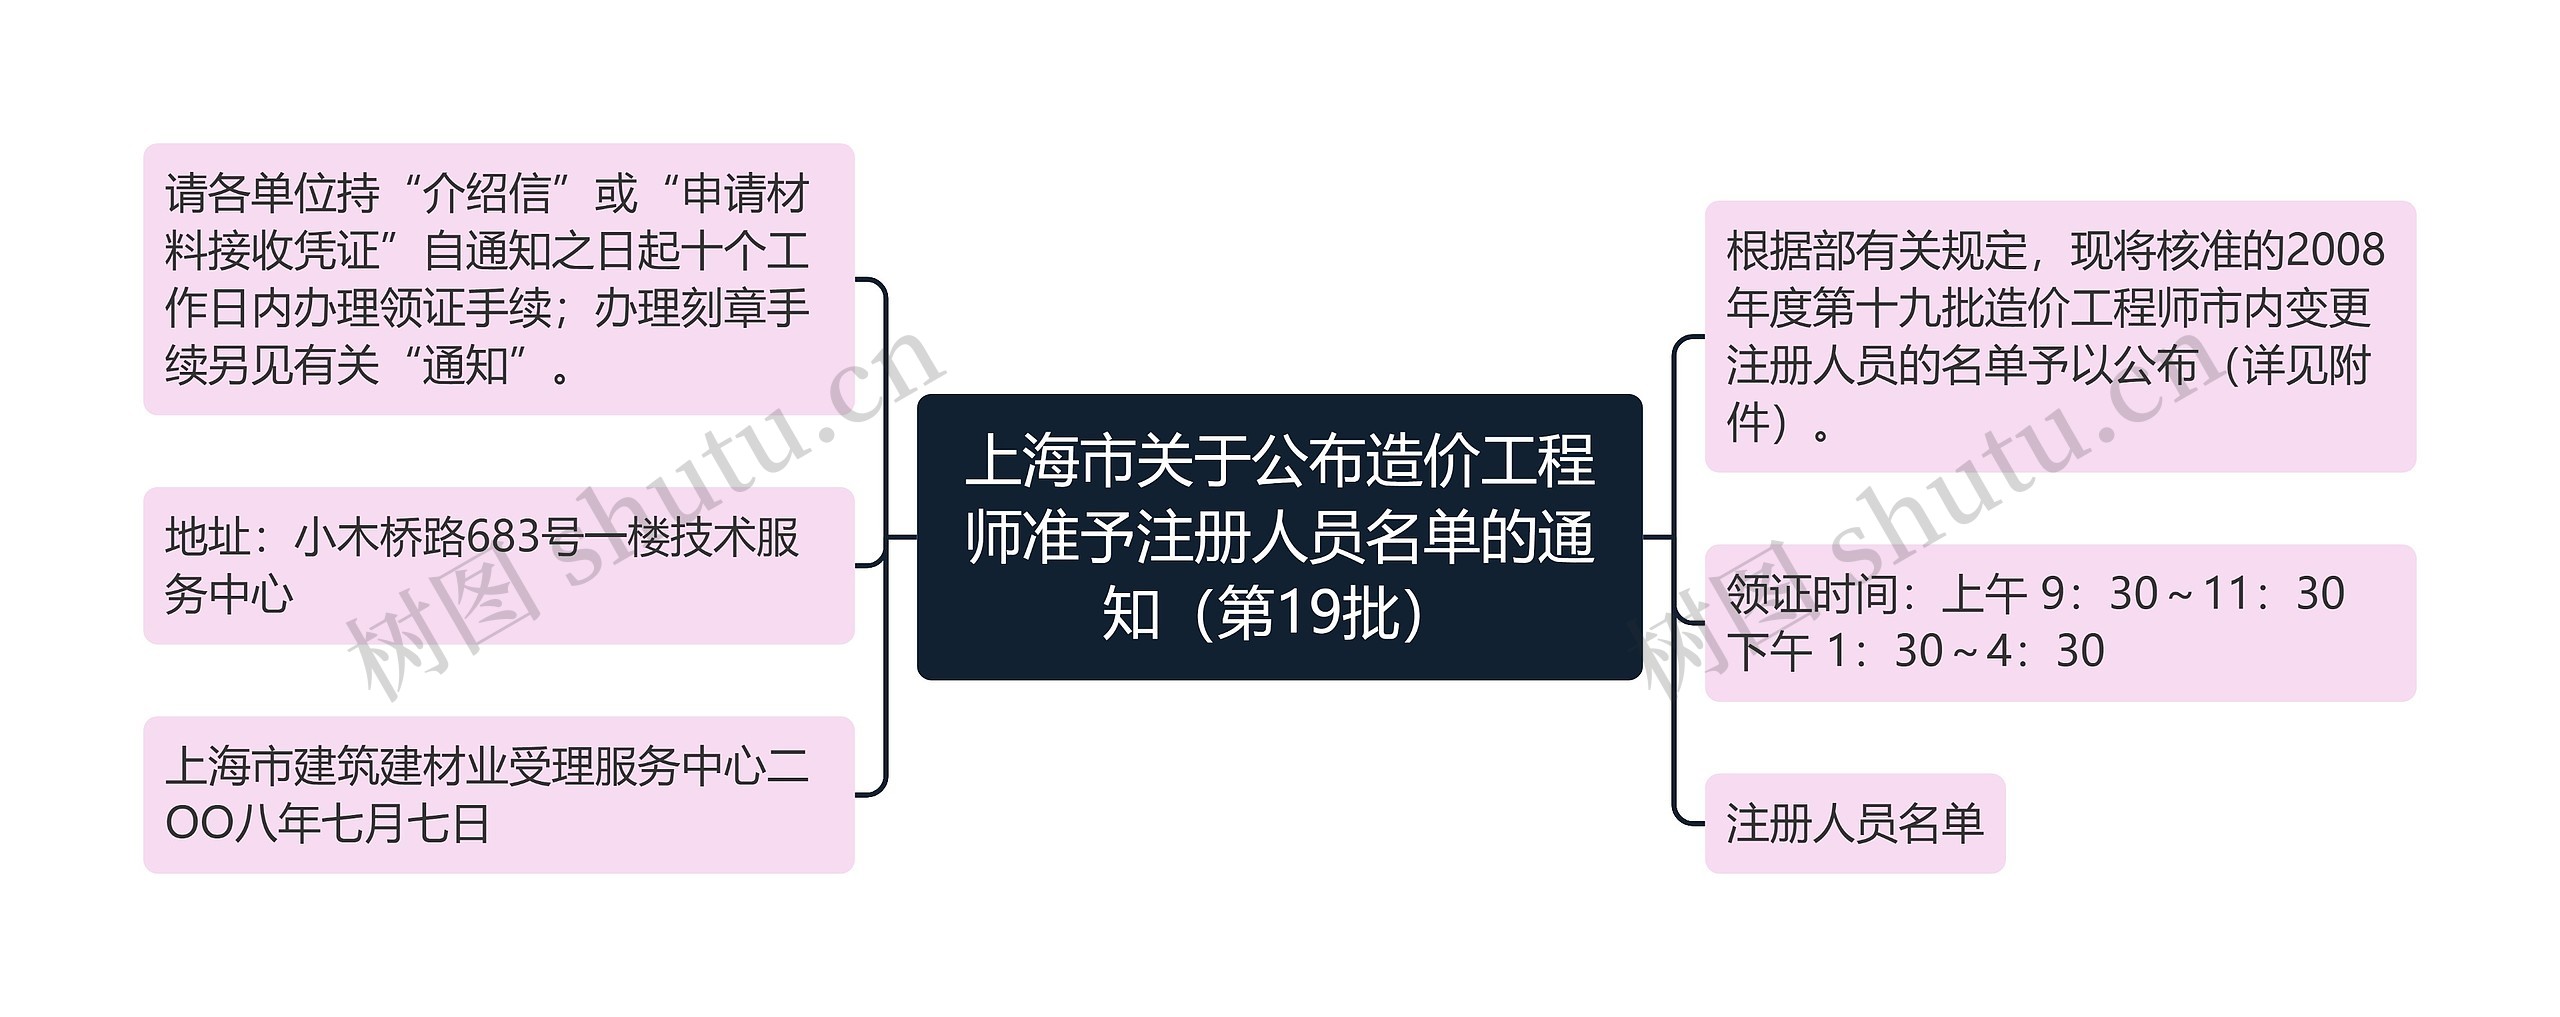 上海市关于公布造价工程师准予注册人员名单的通知（第19批）